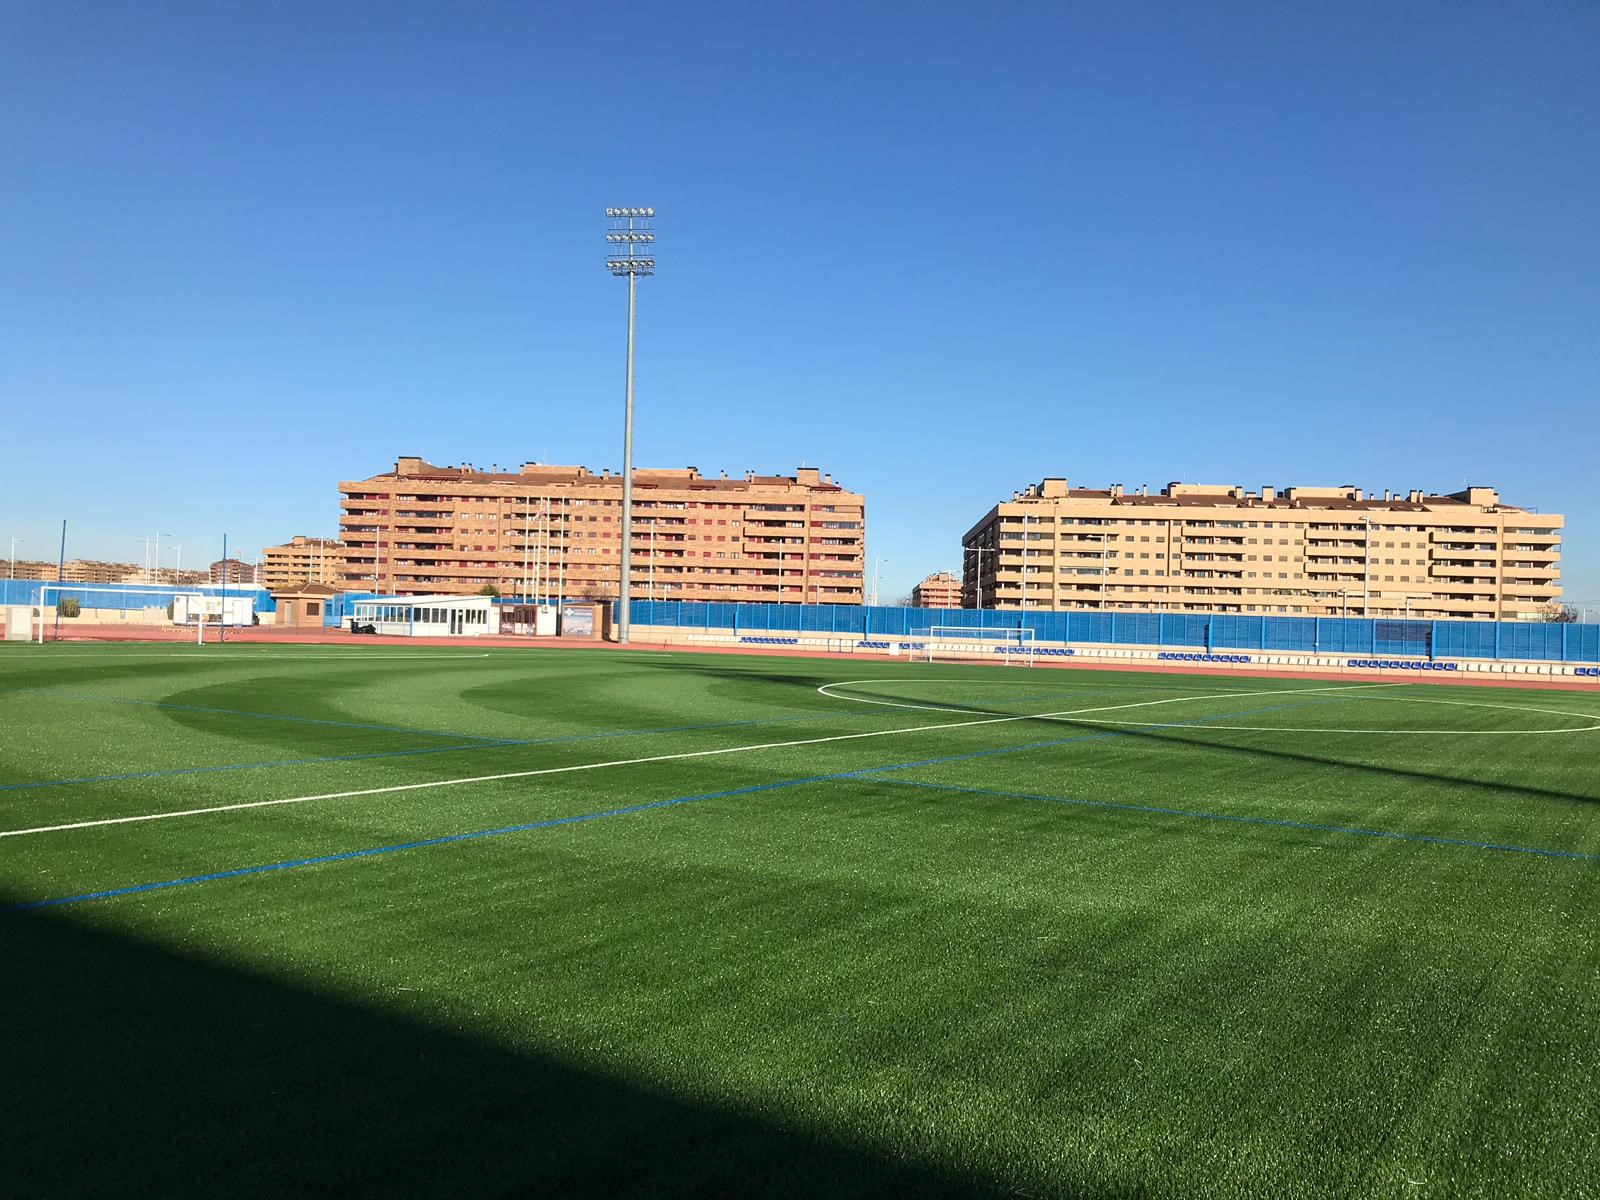 Renovación de Césped Artificial del Campo de Fútbol de la Urbanización El Quiñón, Toledo Image